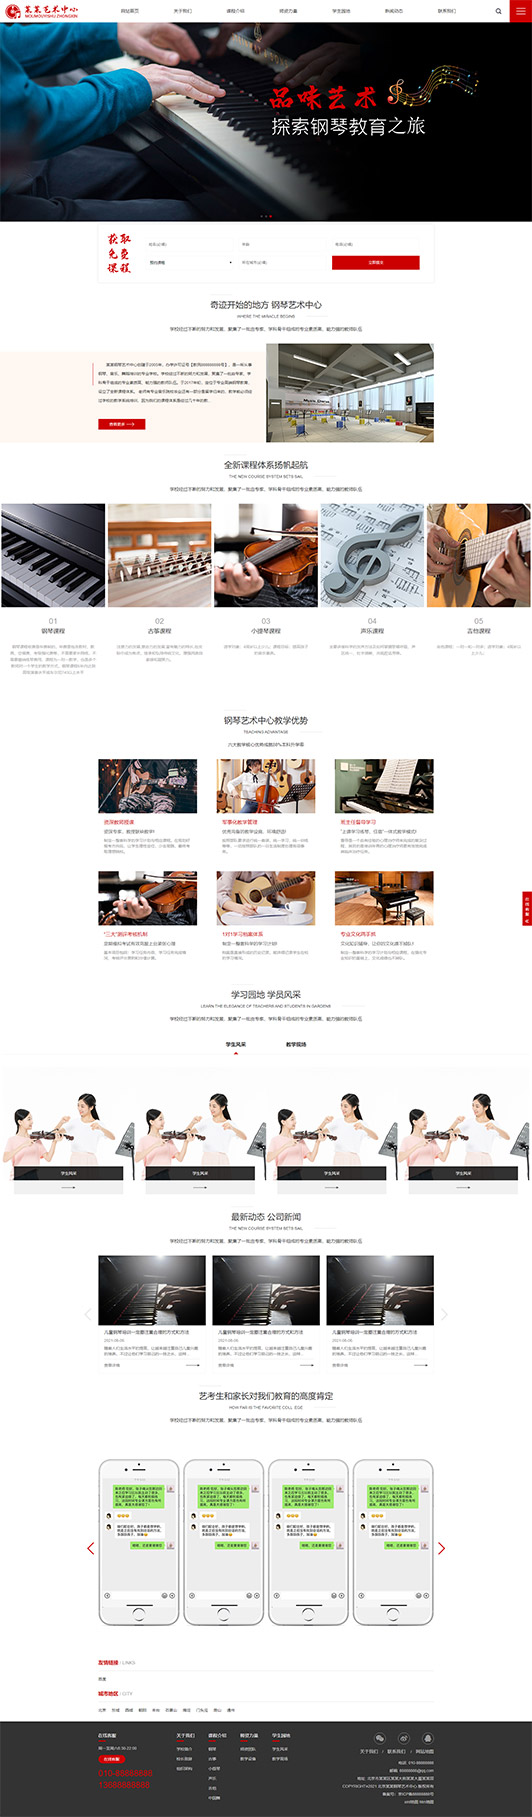 福建钢琴艺术培训公司响应式企业网站